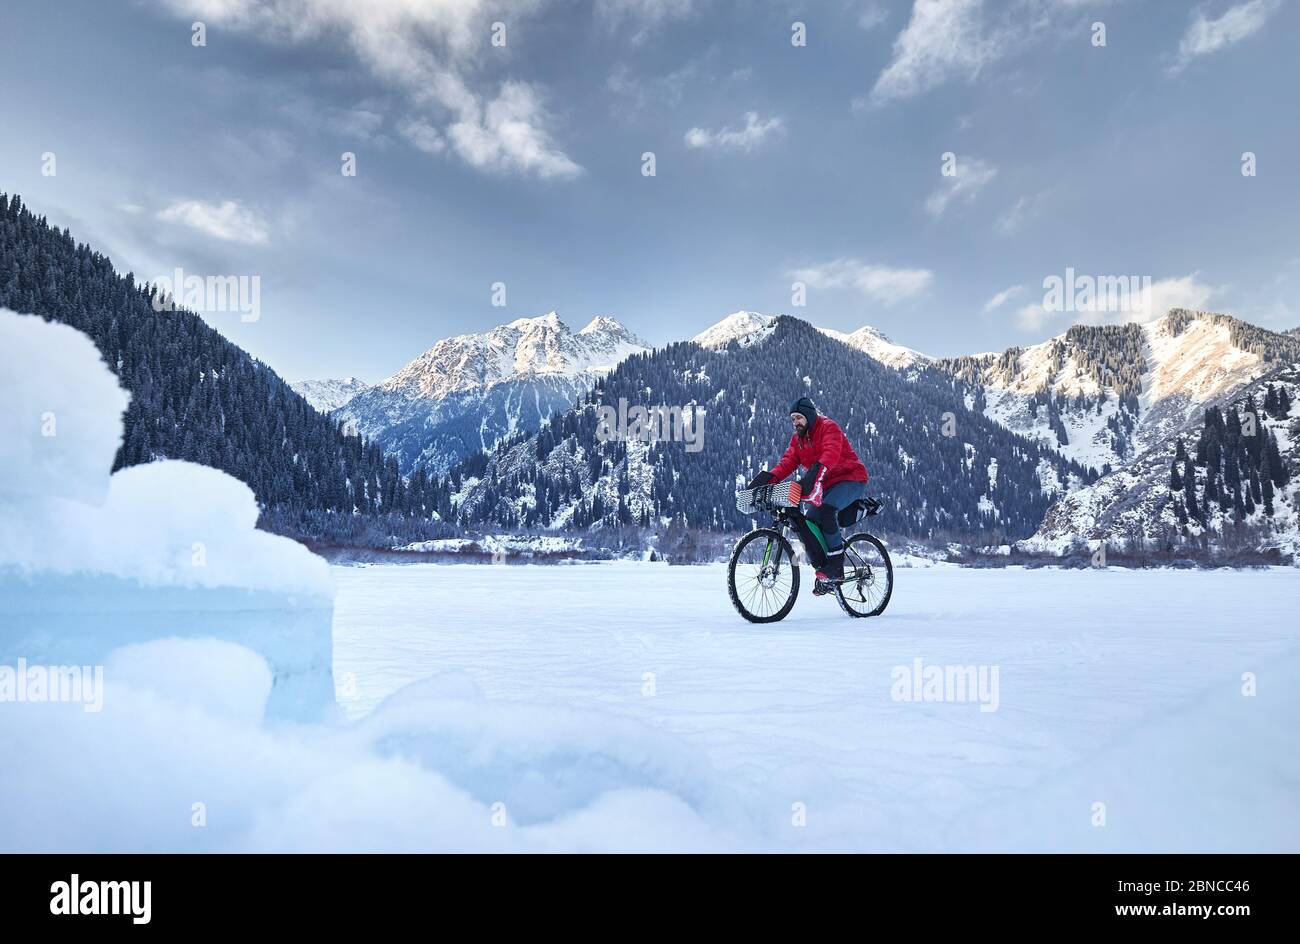 L'homme en veste rouge est à vélo sur un lac gelé à des montagnes enneigées en arrière-plan Banque D'Images